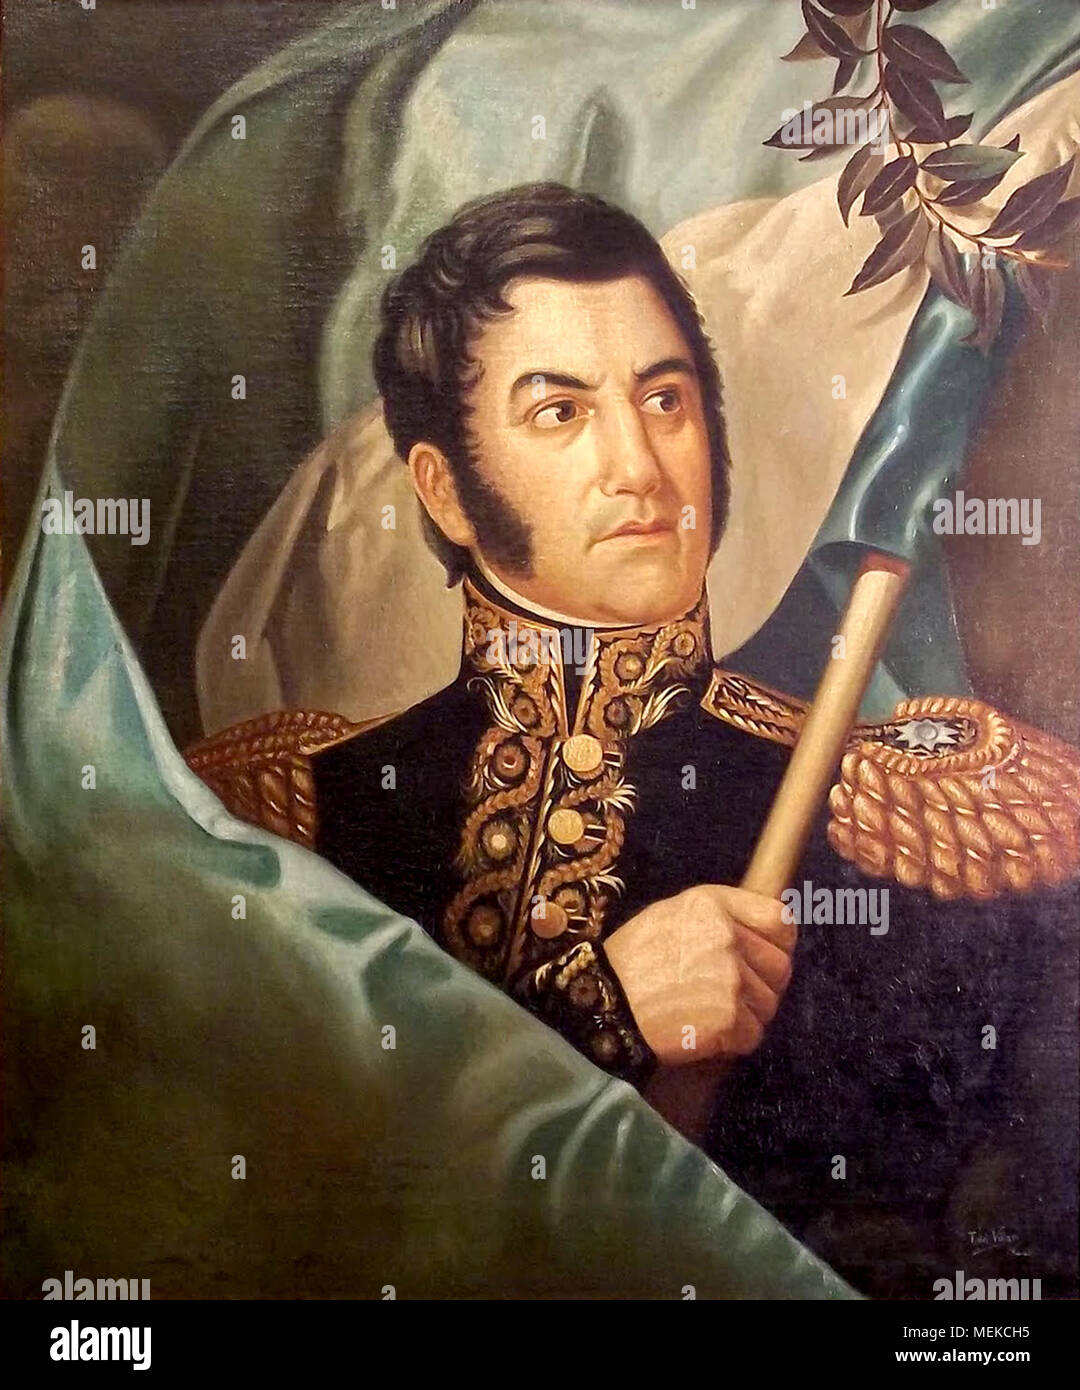 José Francisco de San Martín y Matorras (1778-1850), José de San Martín, Argentinien allgemein und der Prime Leader des südlichen Teils Südamerikas erfolgreicher Kampf für Unabhängigkeit vom spanischen Reich, die als Beschützer von Peru serviert. Stockfoto